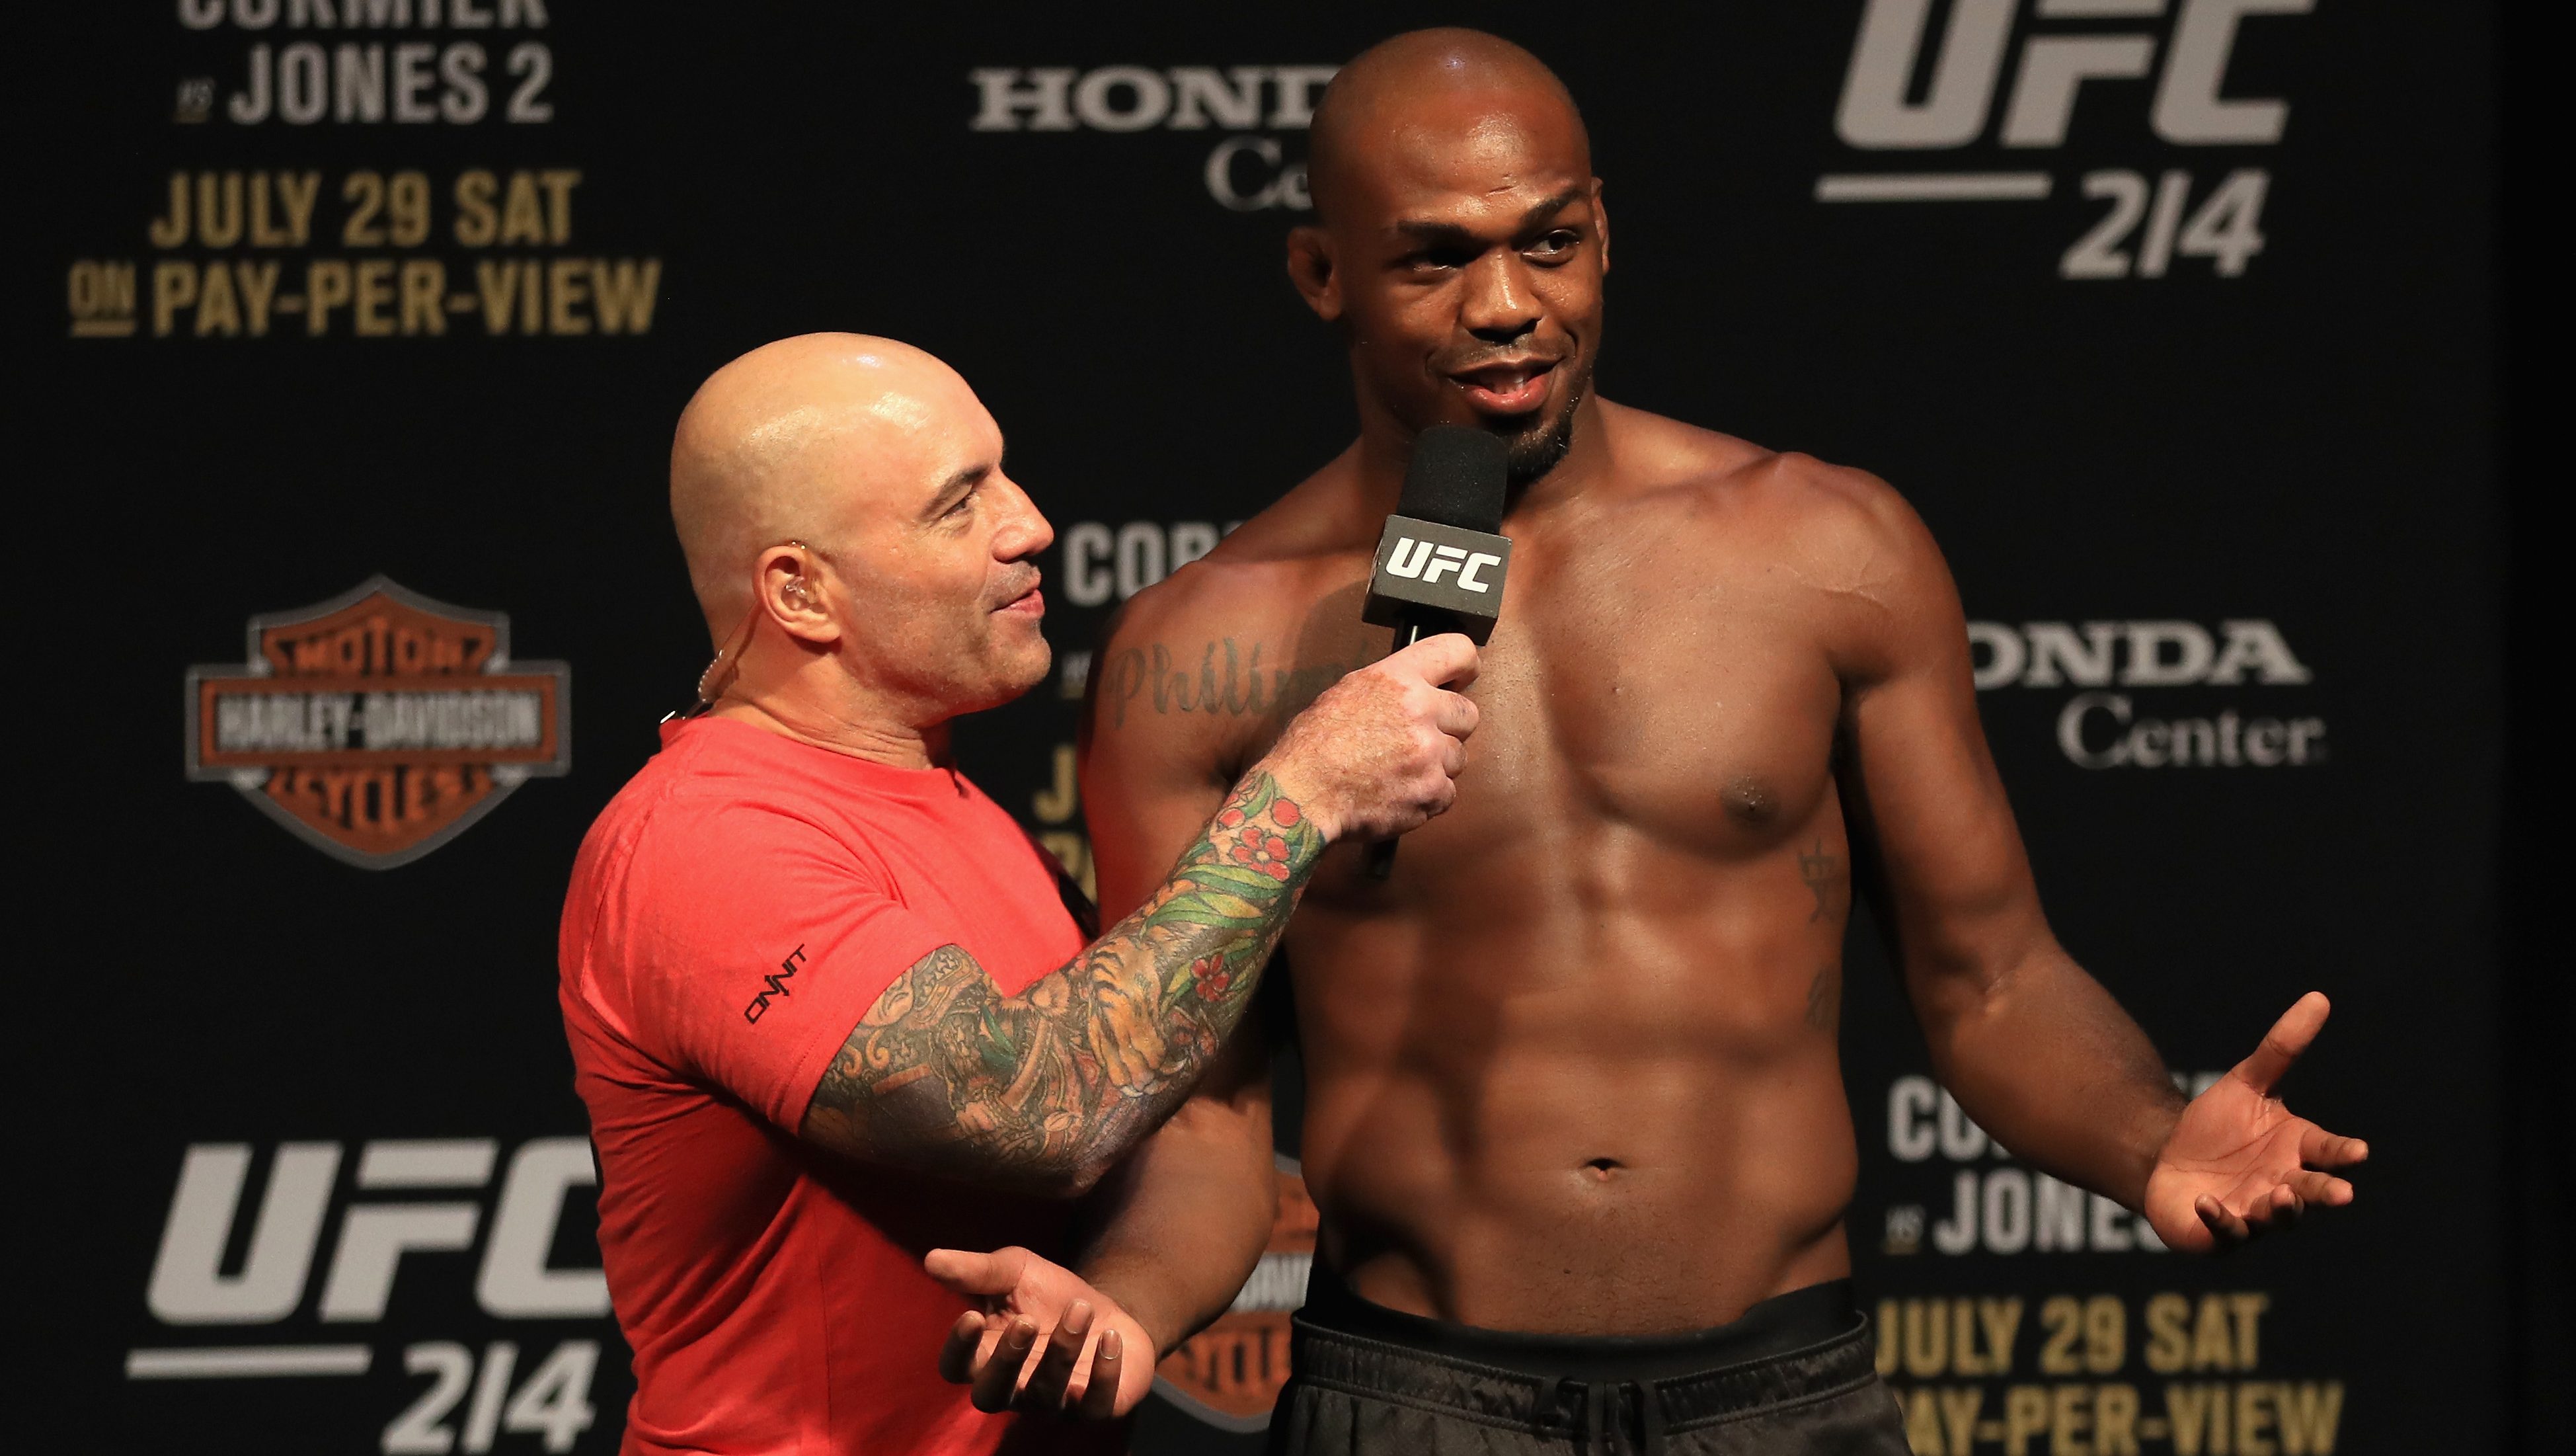 UFC News: Francis Ngannou takes hilarious shot at Jon Jones